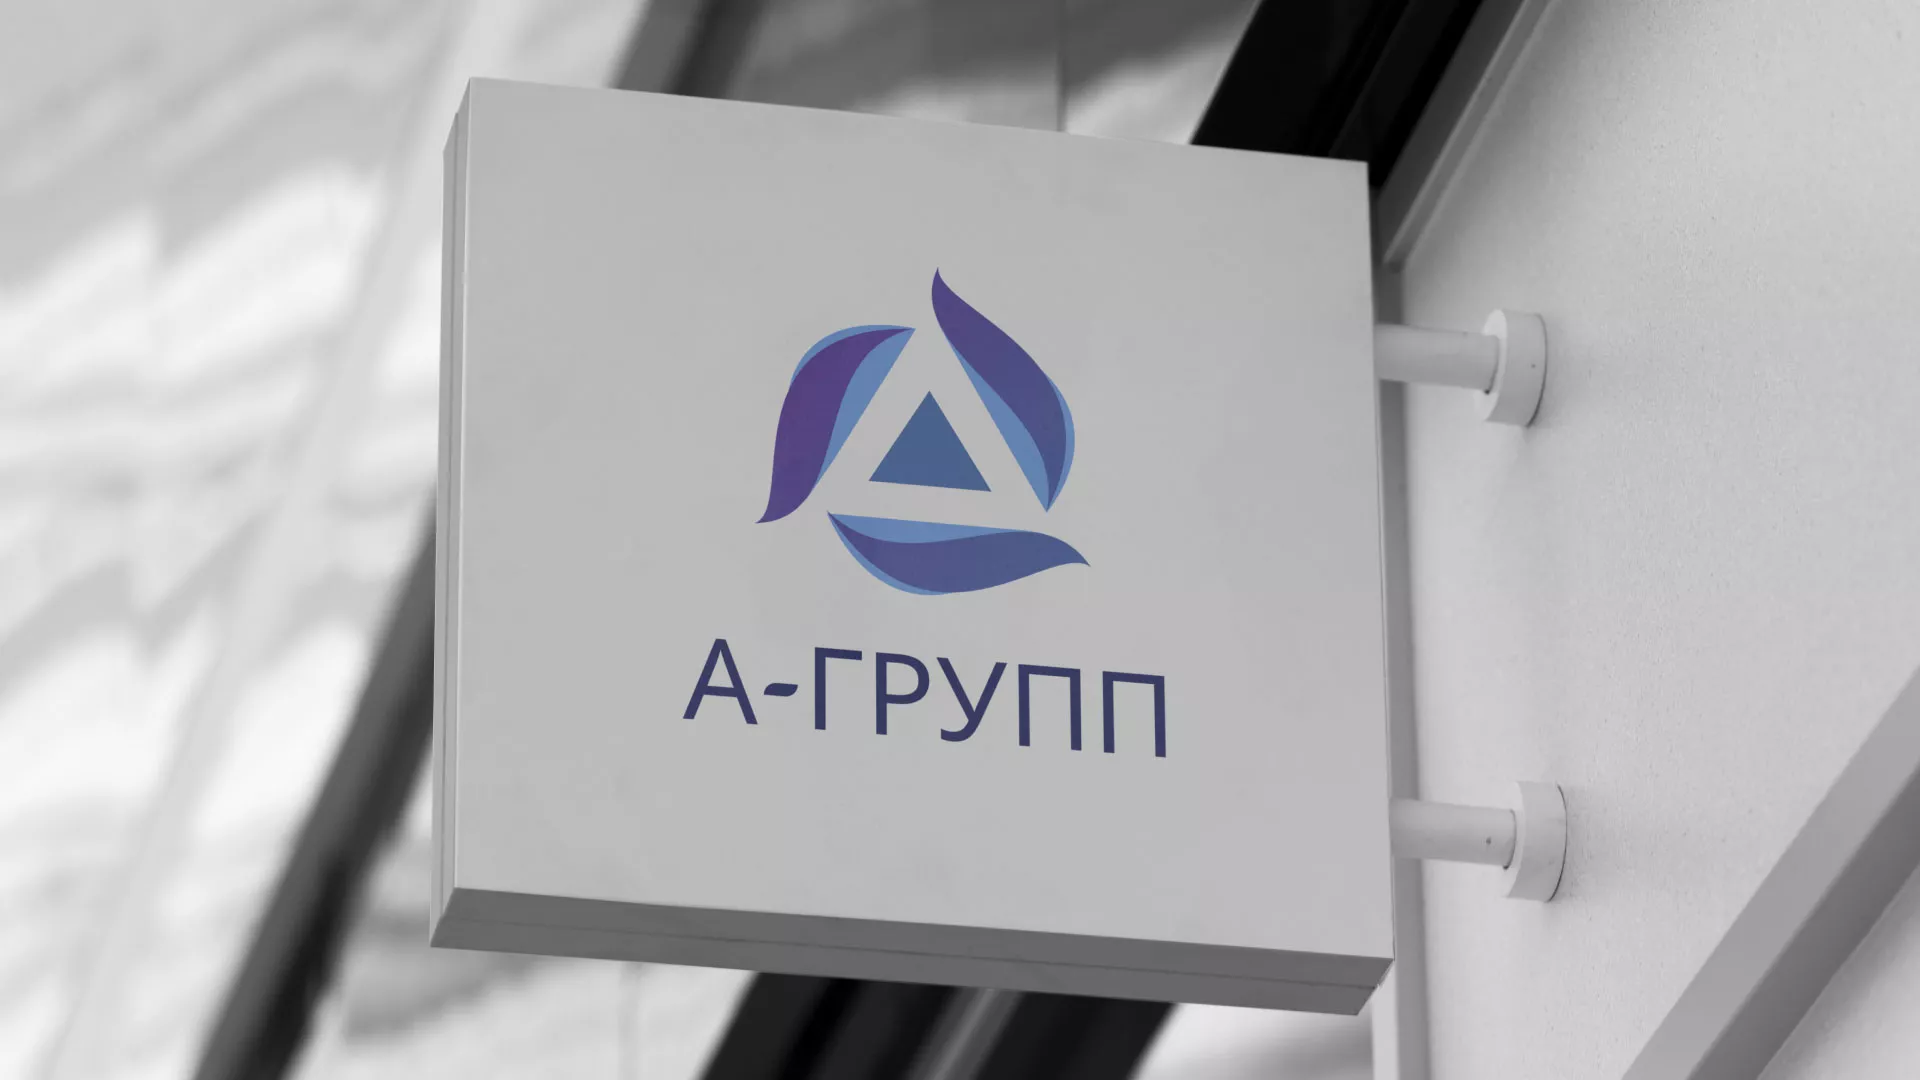 Создание логотипа компании «А-ГРУПП» в Болохово